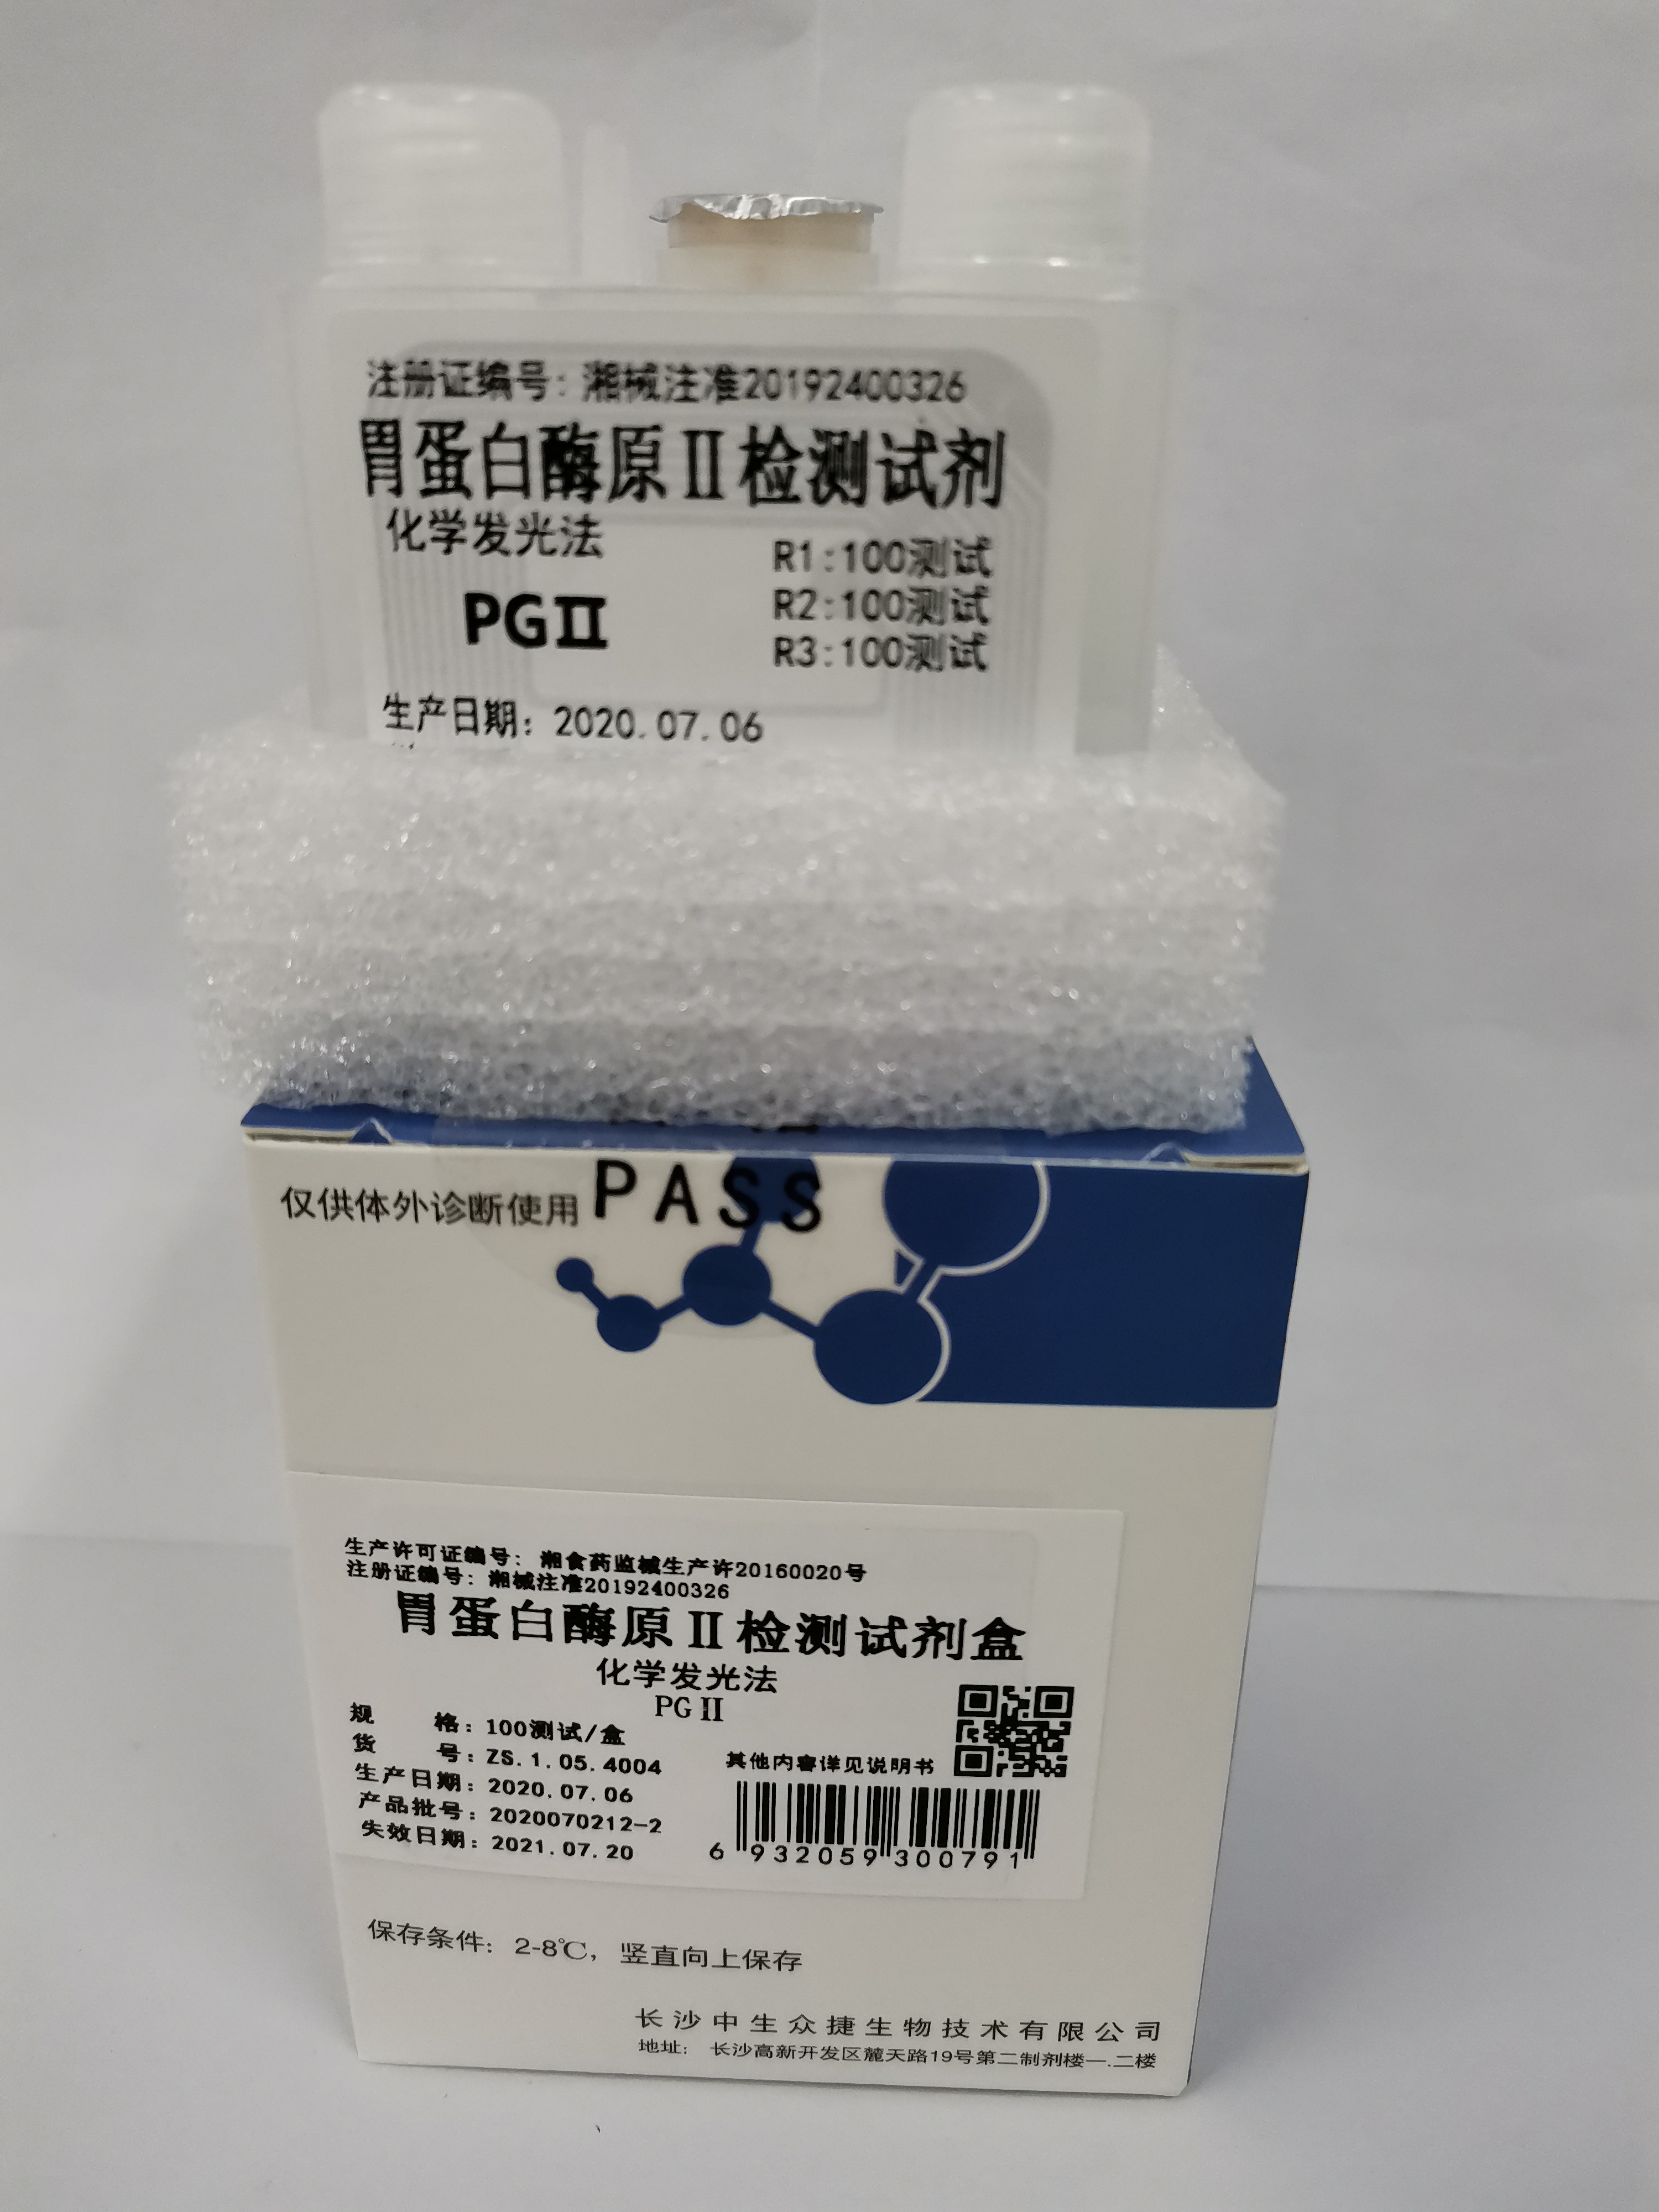 【中生众捷】胃蛋白酶原Ⅱ检测试剂盒(化学发光法)/100T